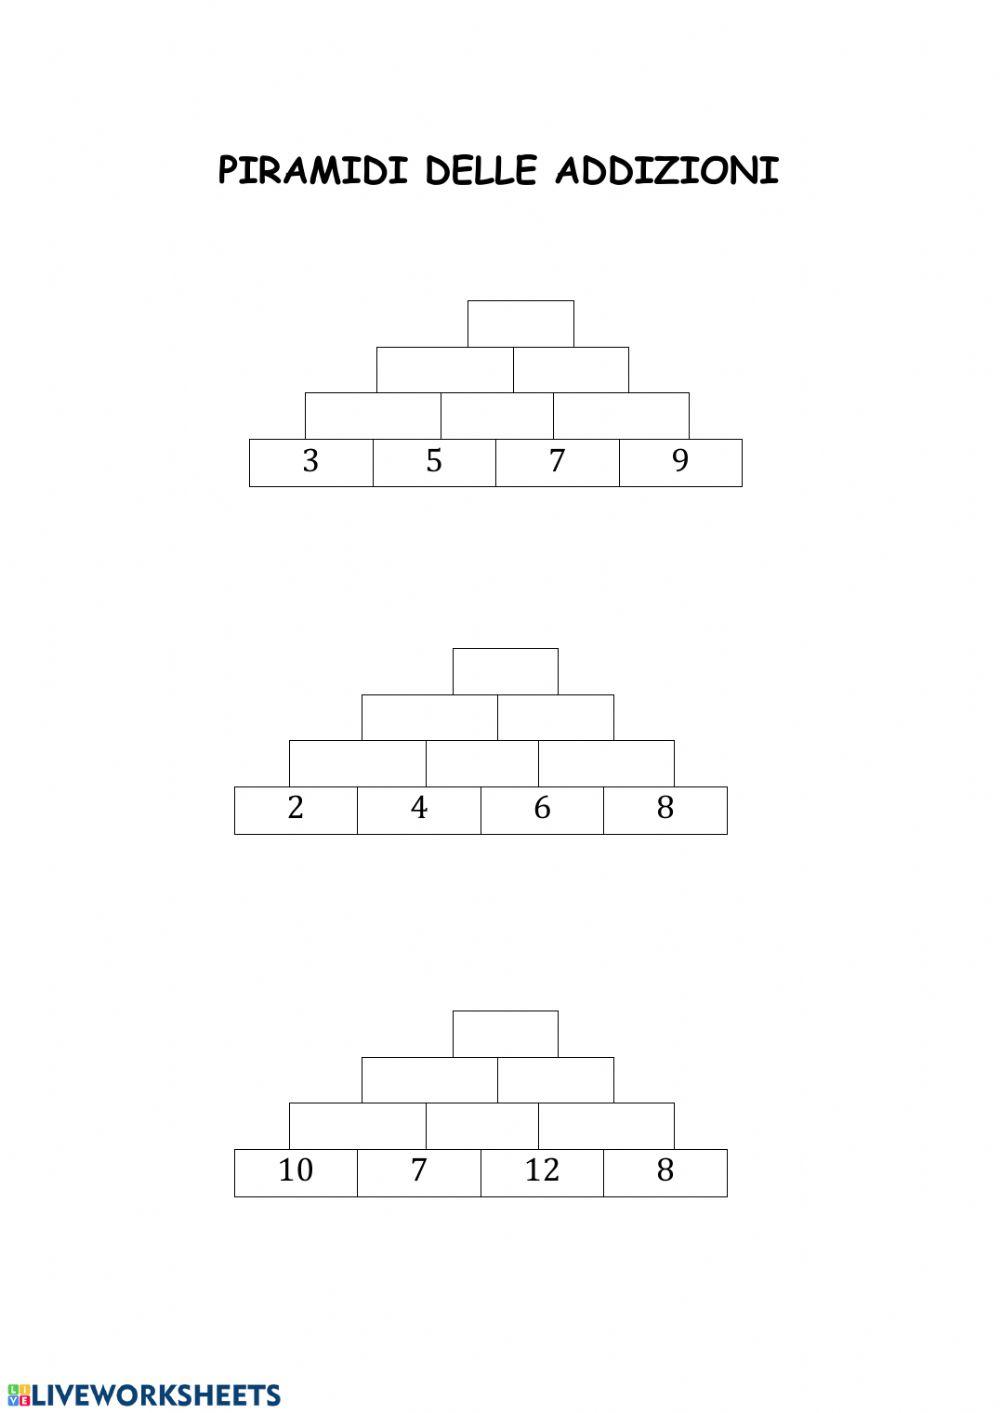 Piramidi delle addizioni